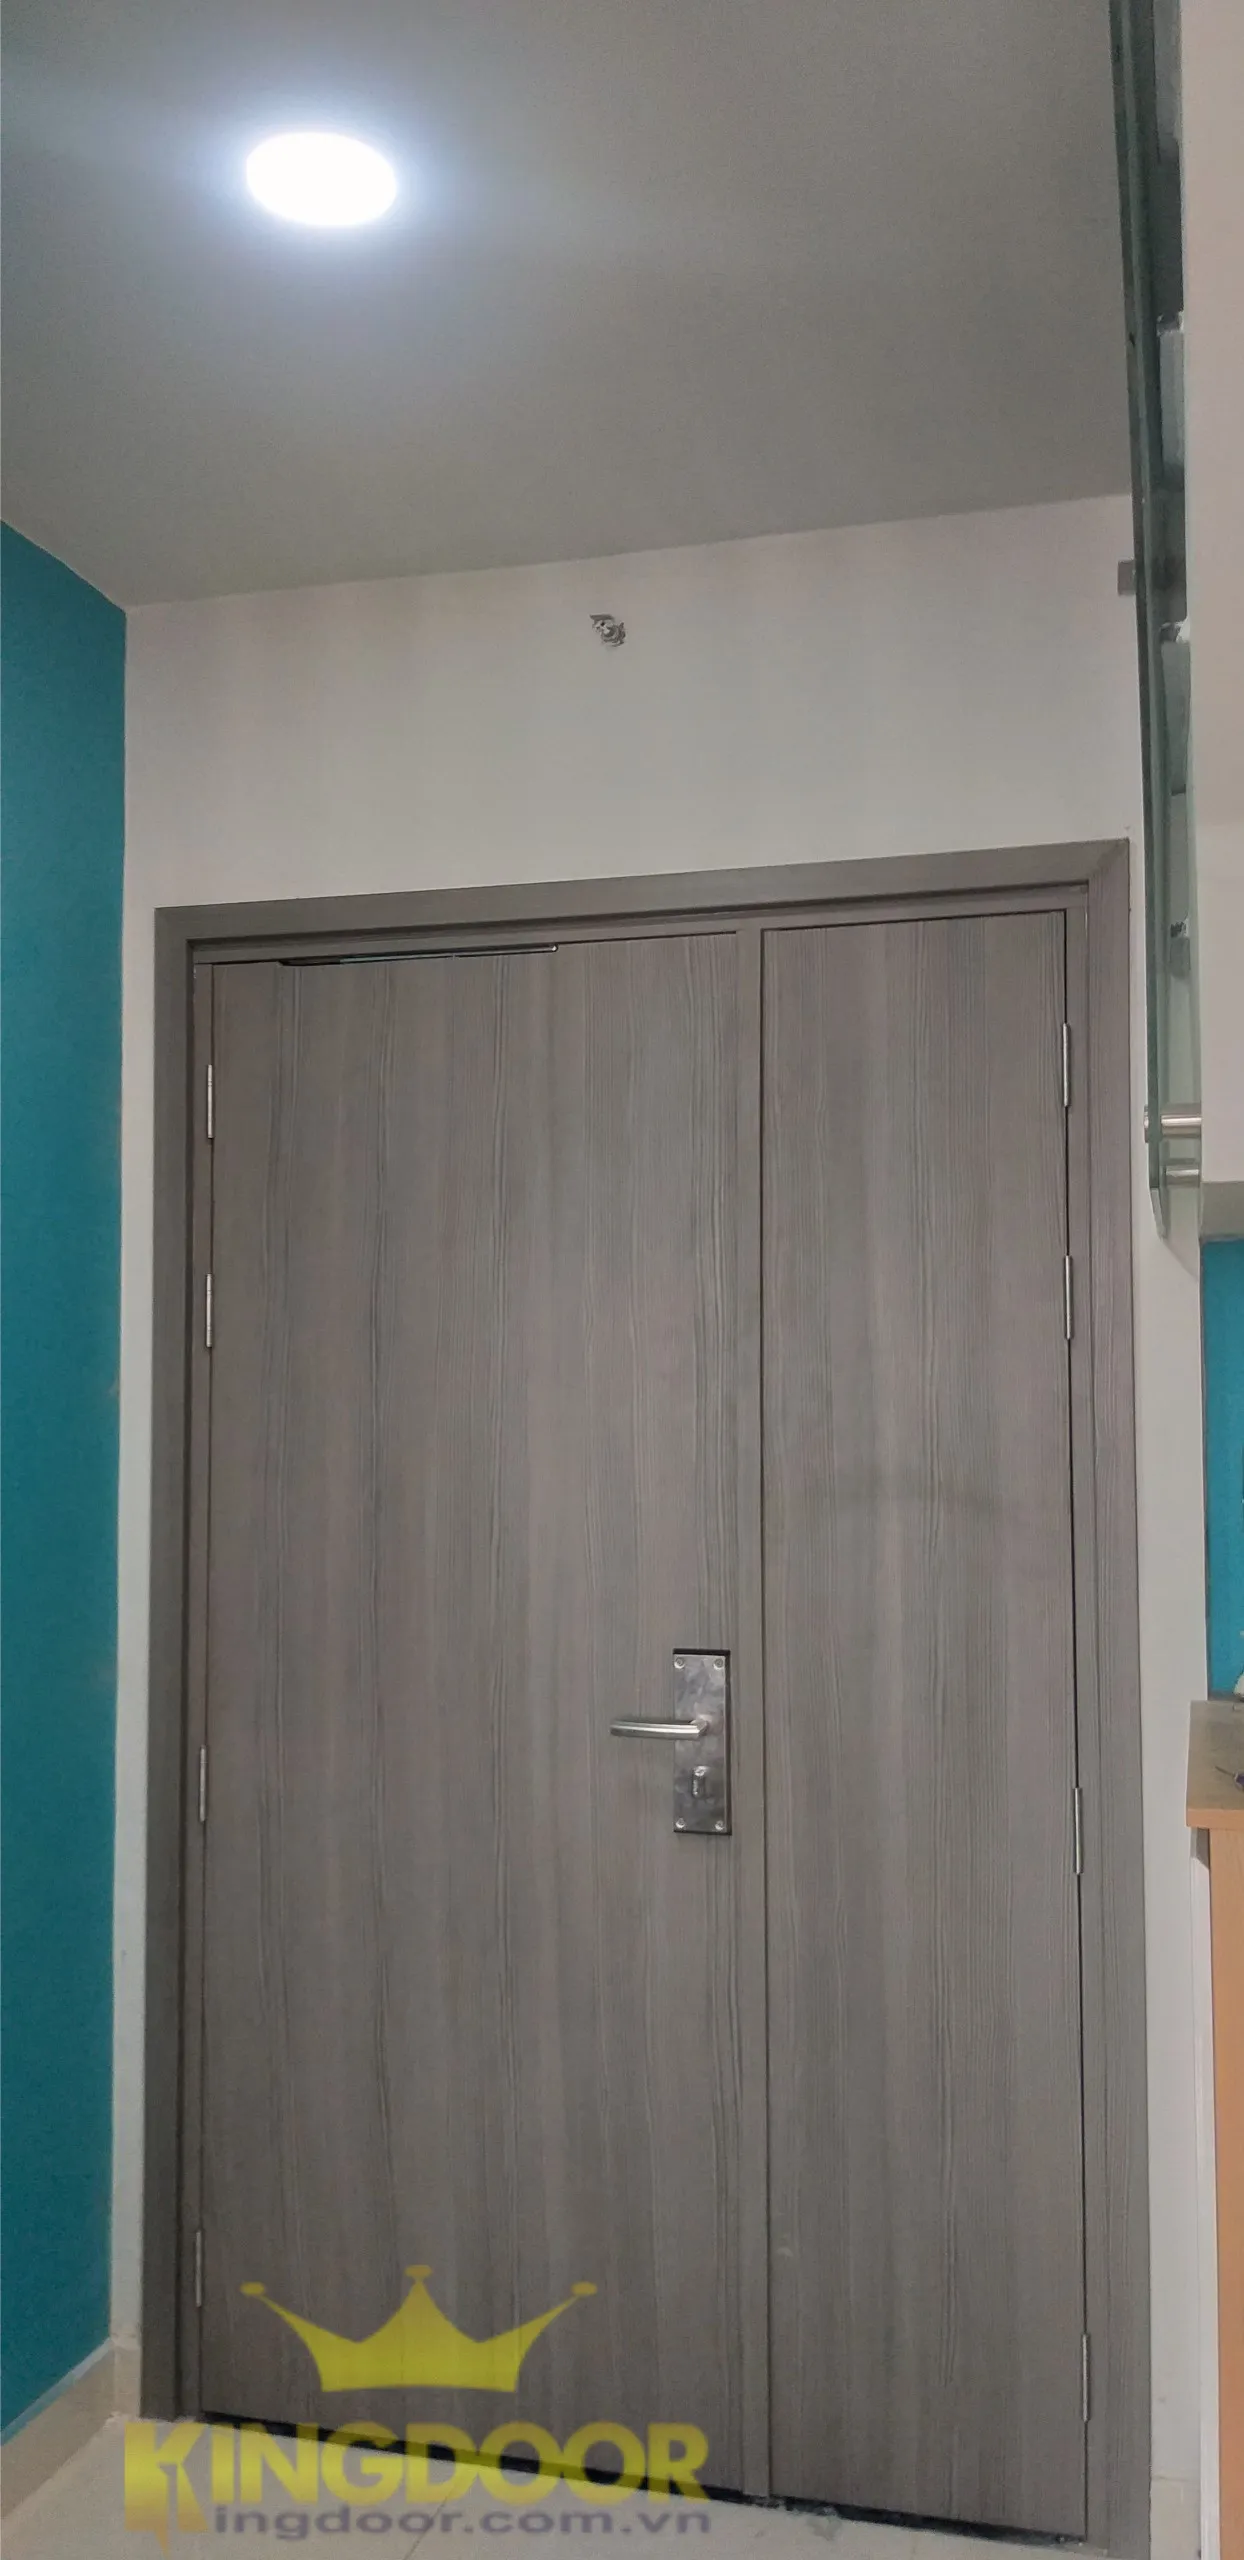 Kingdoor thi công lắp dựng hoàn thiện cửa nhựa giả gỗ Composite tại Thủ Đức.